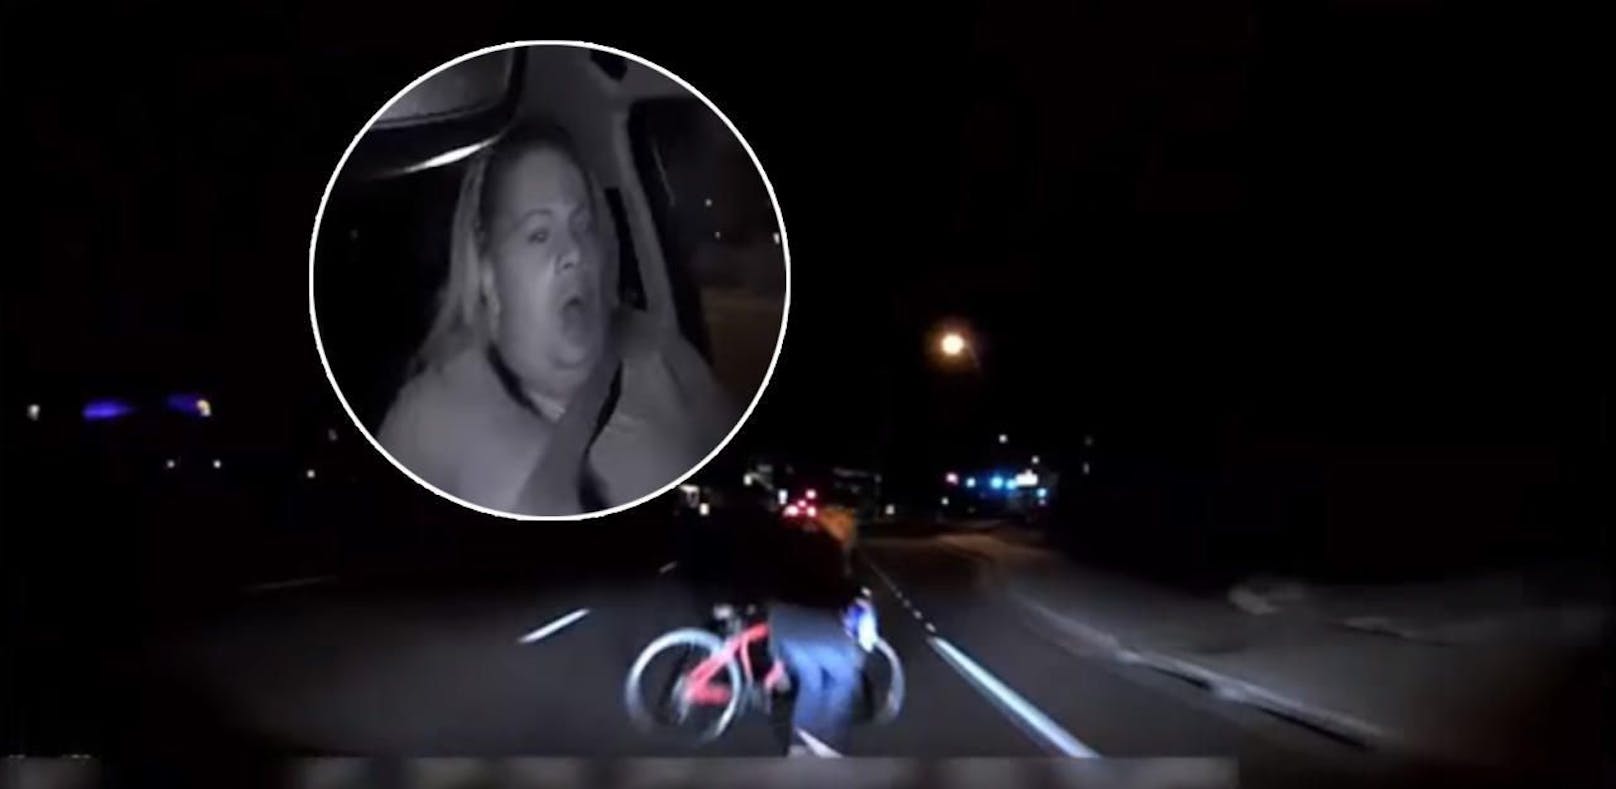 Polizei veröffentlicht Video der Uber-Todesfahrt